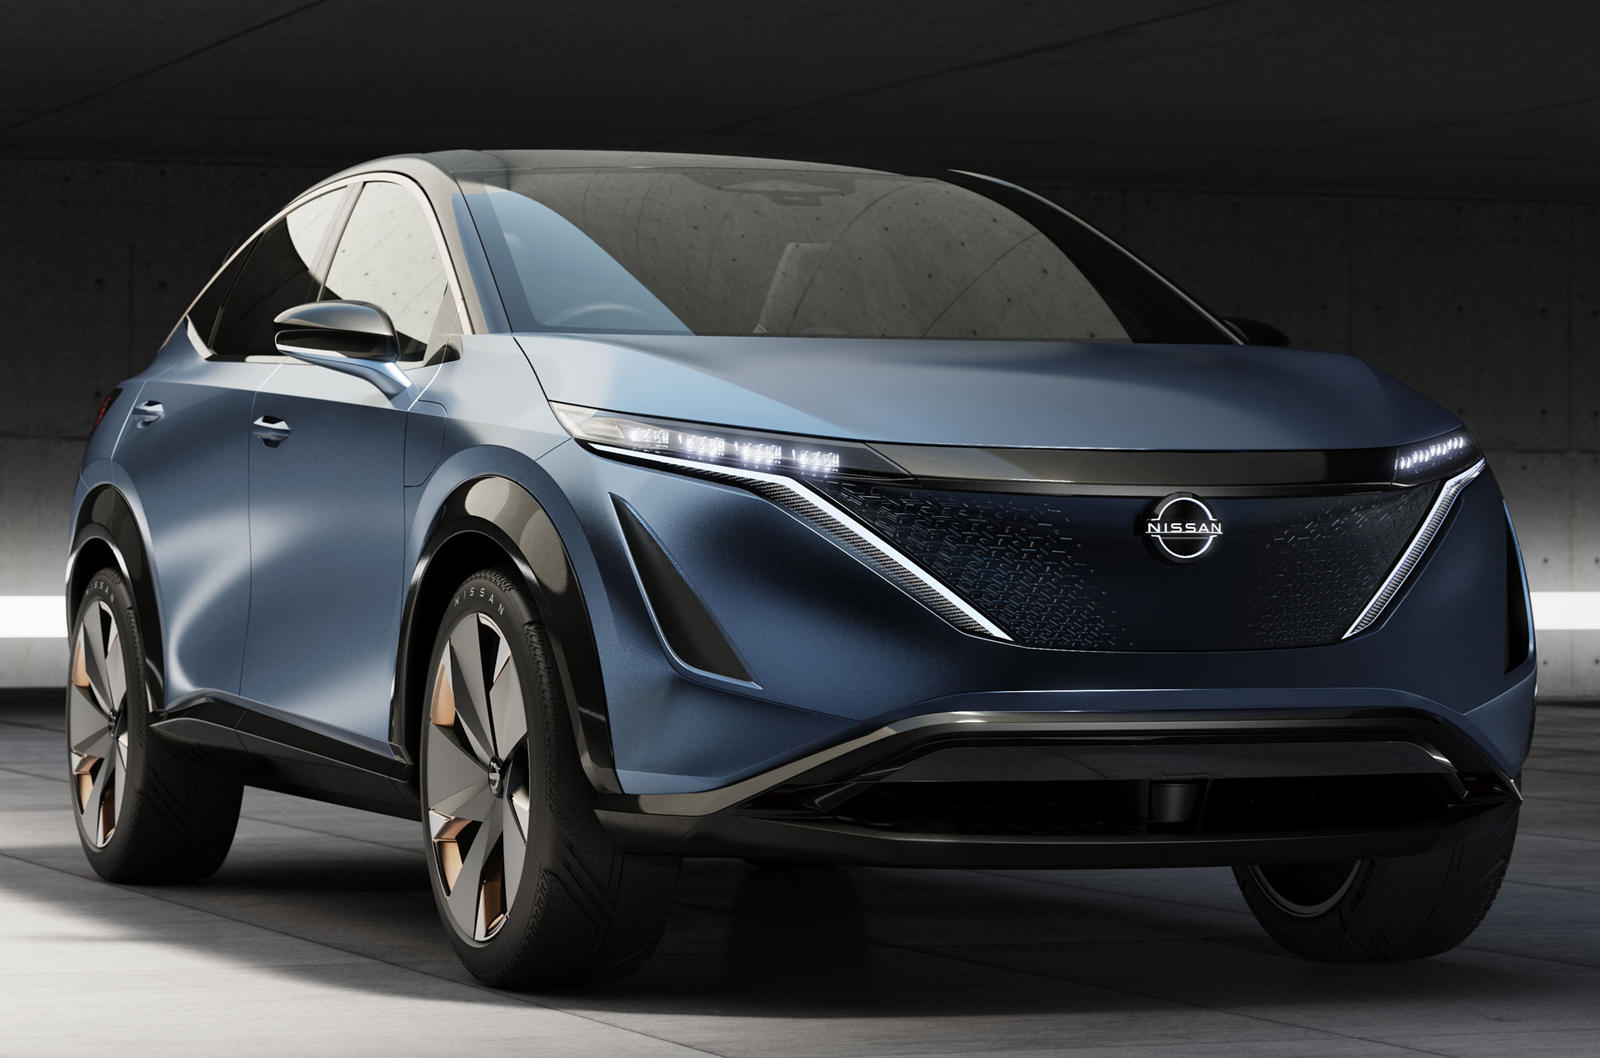 Во время мероприятия 15 июля Nissan представит свою вторую полностью электрическую модель под названием Ariya. В отличие от 2020 Nissan Leaf, который является хэтчбеком, 2021 Ariya будет кроссовером, основанным на Ariya Concept. И на основе тизеров, 